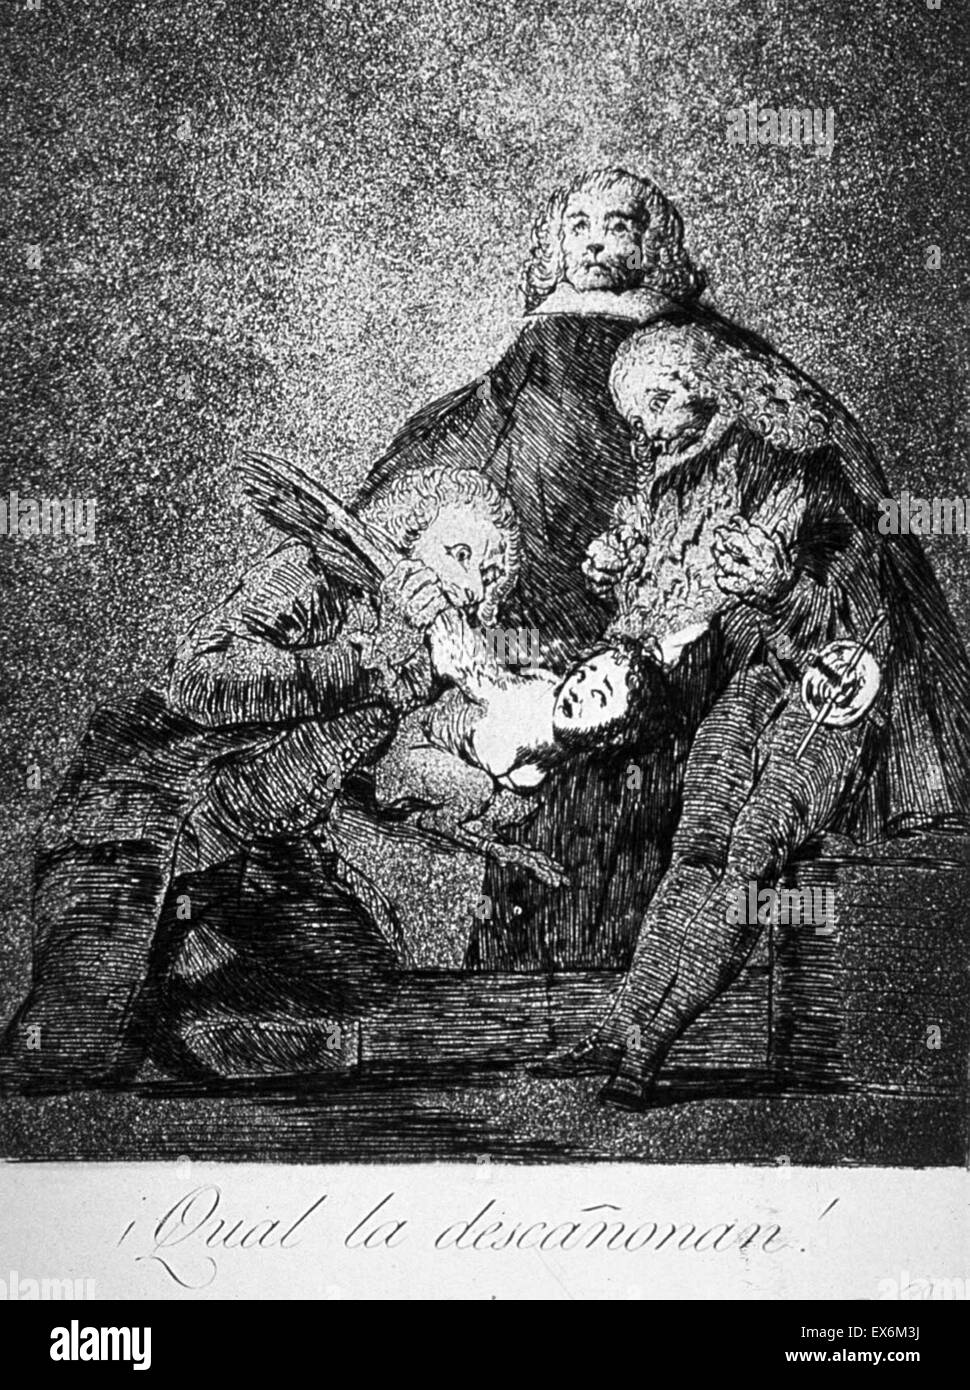 Imprimir por Francisco de Goya (1746-1828), pintor y grabador romántico español considerado como el último de los antiguos maestros y el primero de los modernos. Fecha 1780 Foto de stock